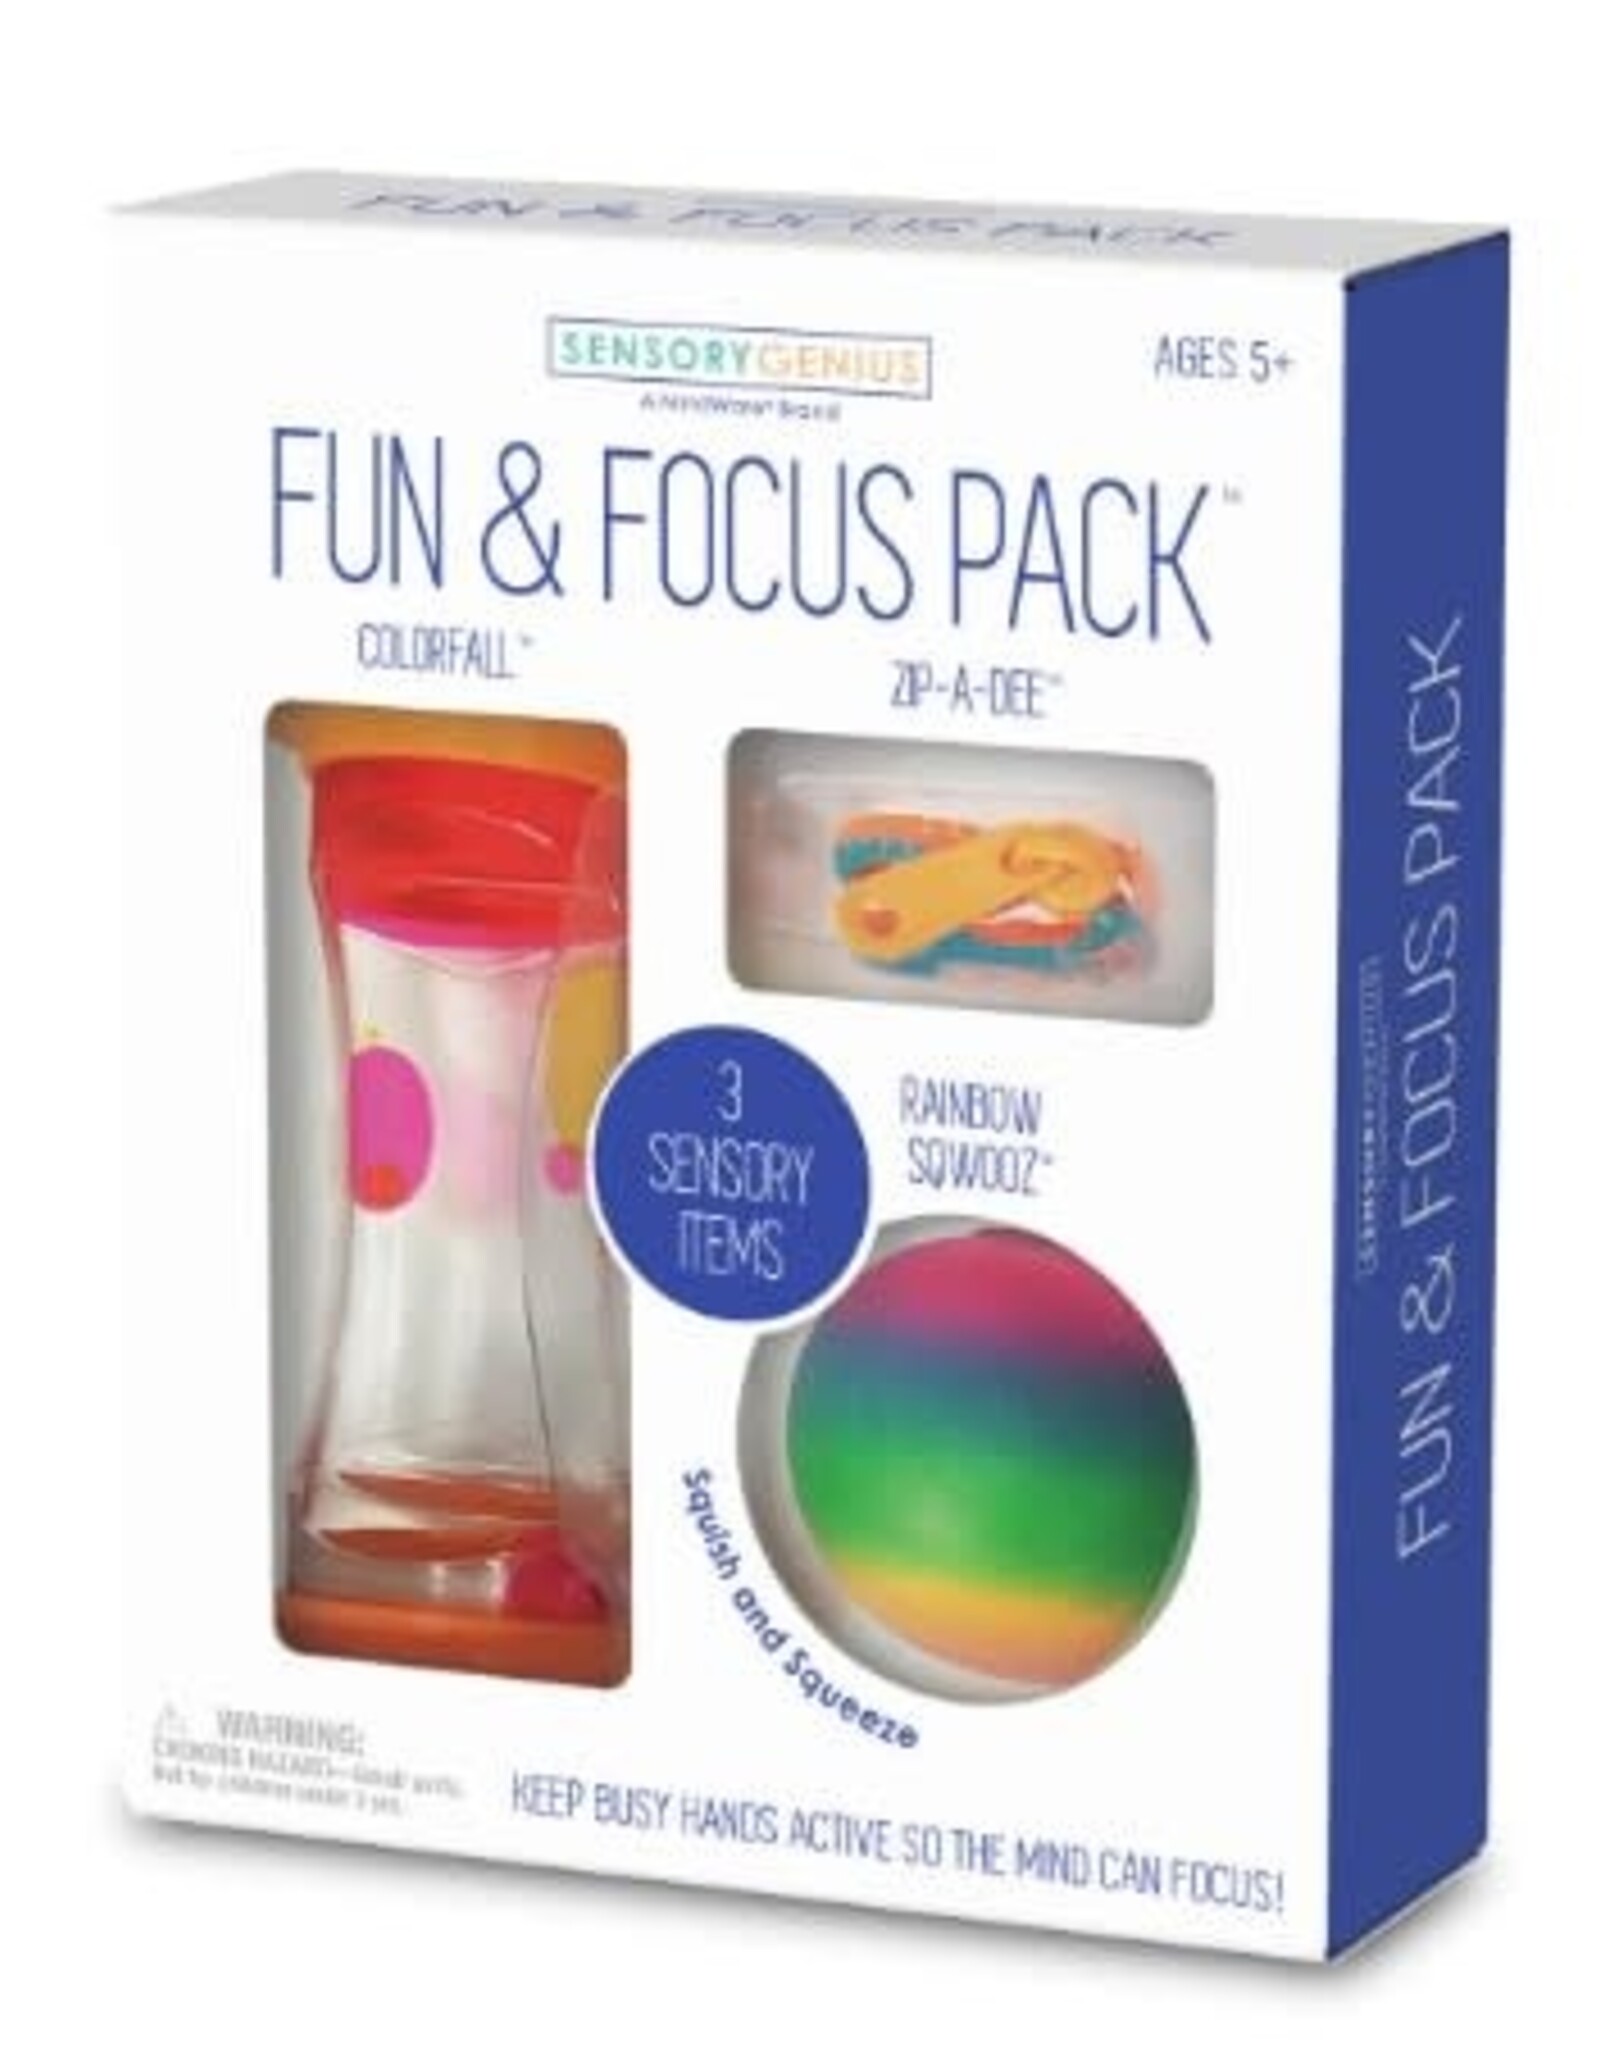 MindWare Fun and Focus Pack (Sensory Genius)